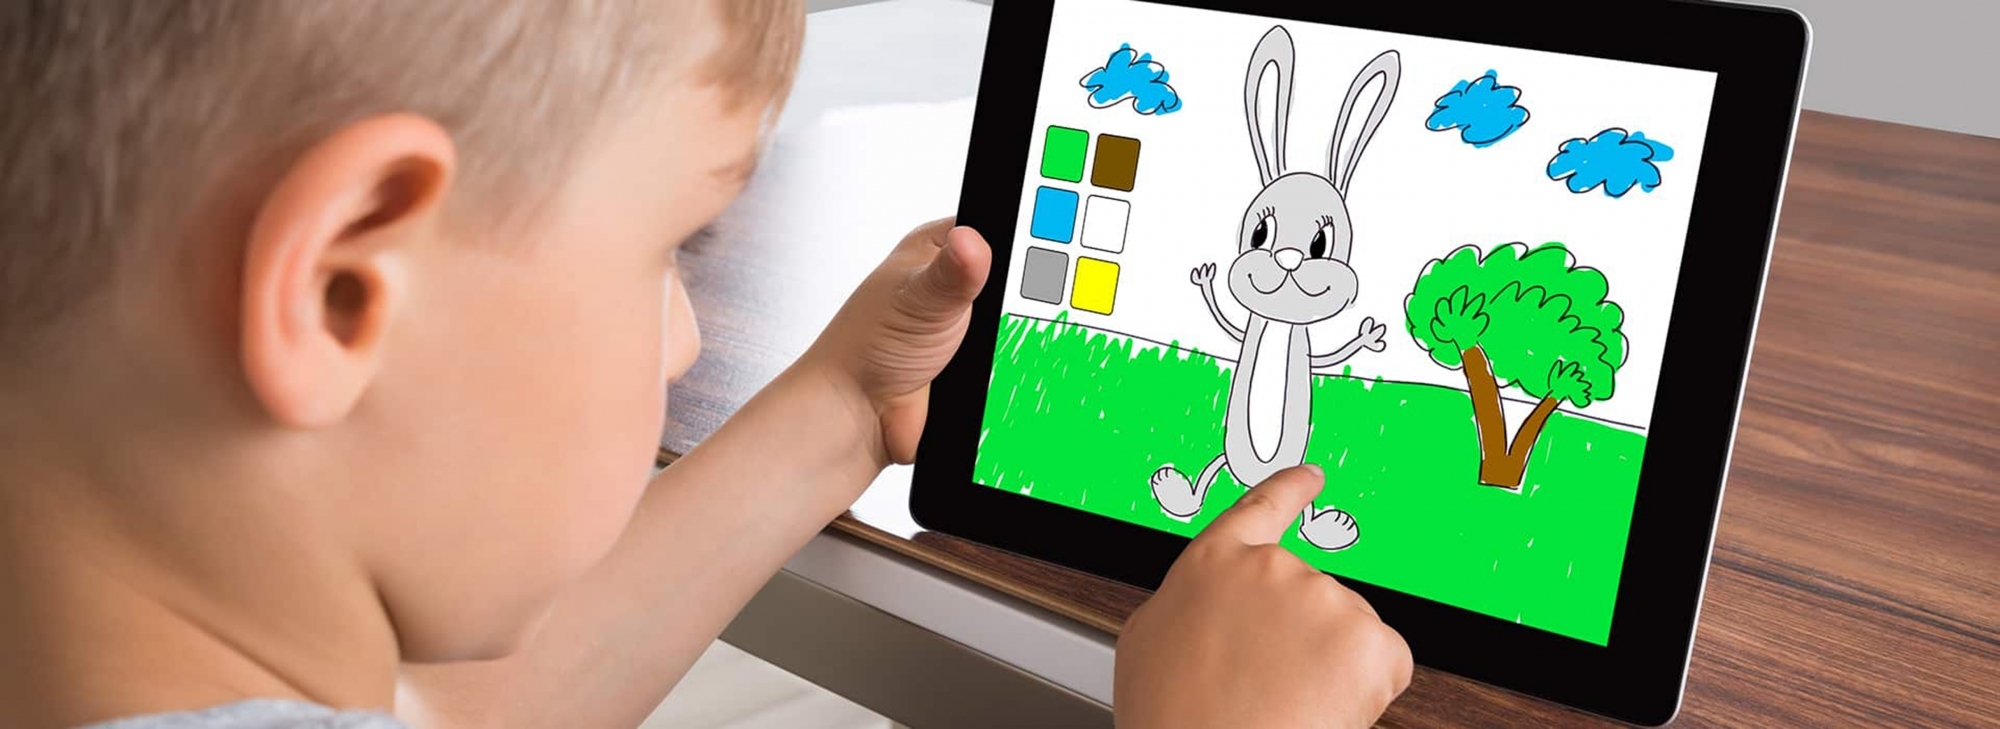 Les contenus numériques bien choisis aident les enfants à développer leur créativité.